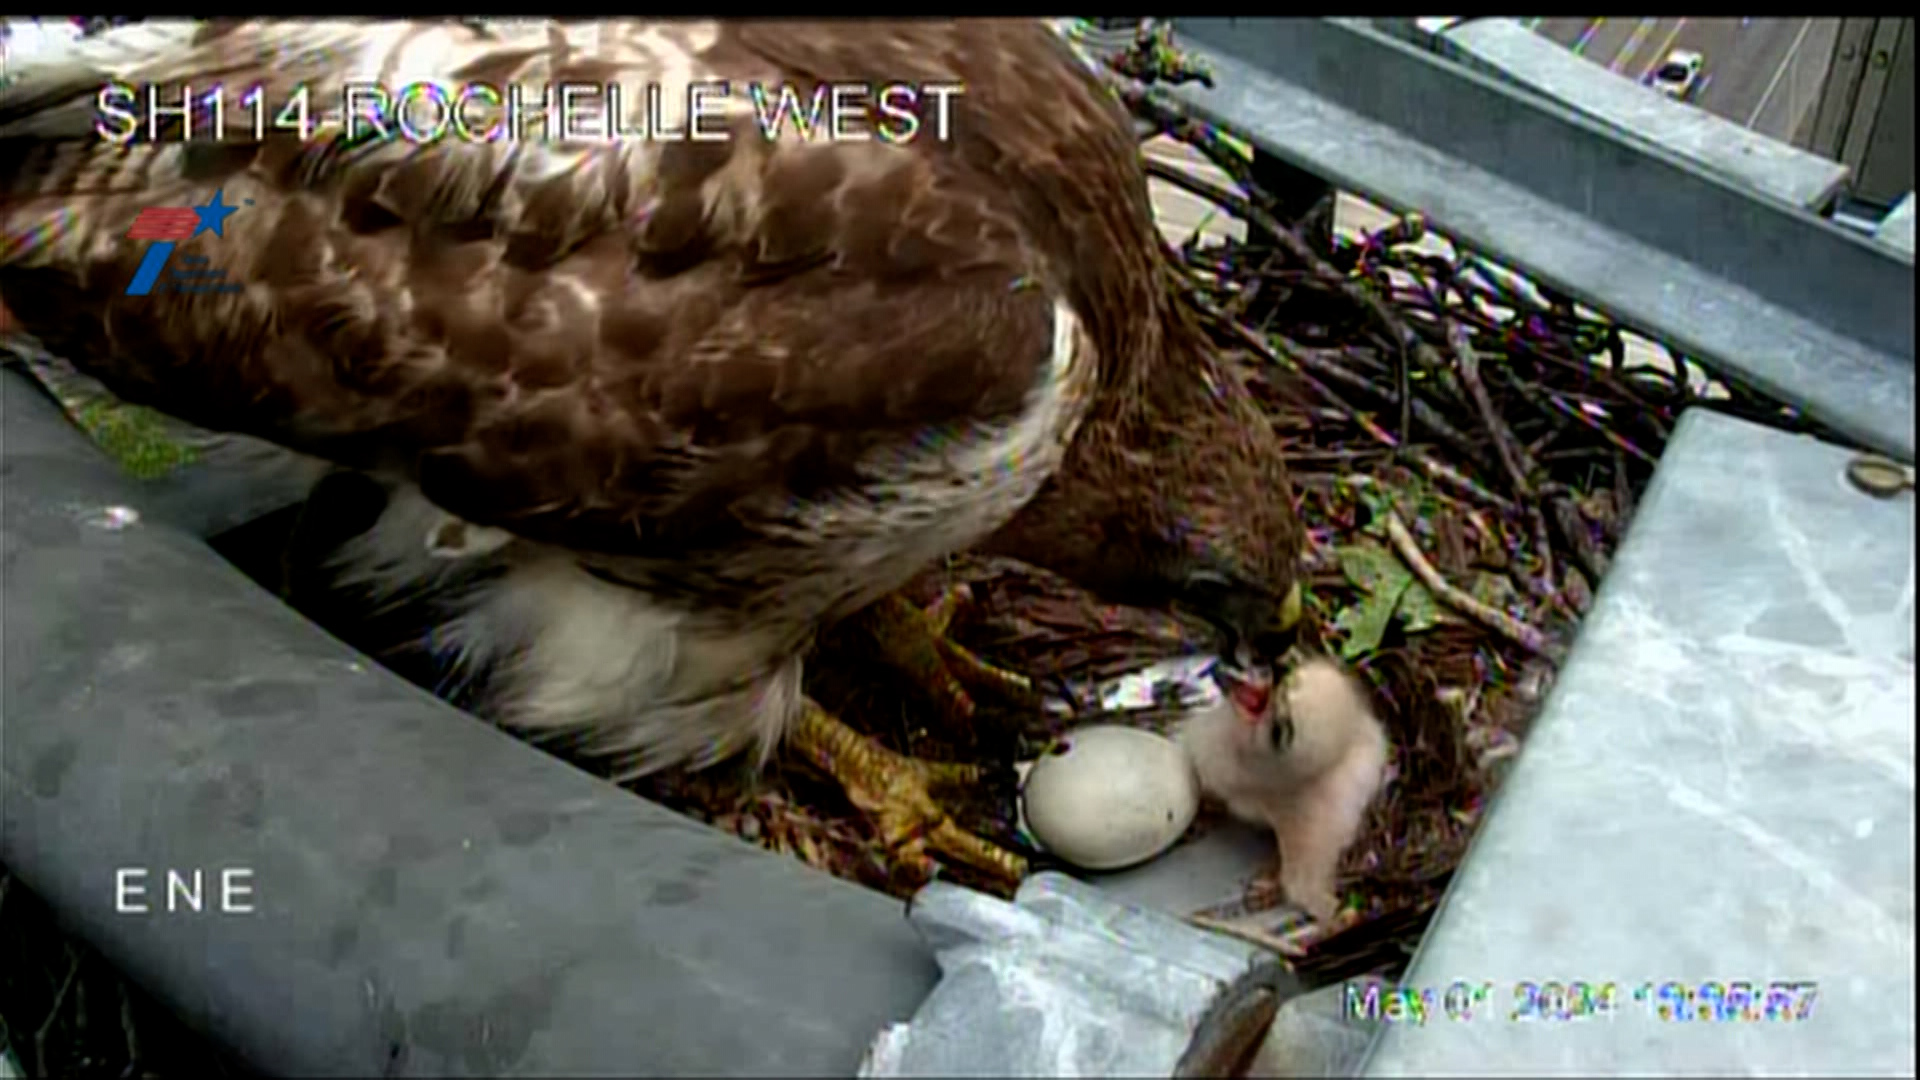 TxDOT cameras captured a hawk feeding its newborn baby.